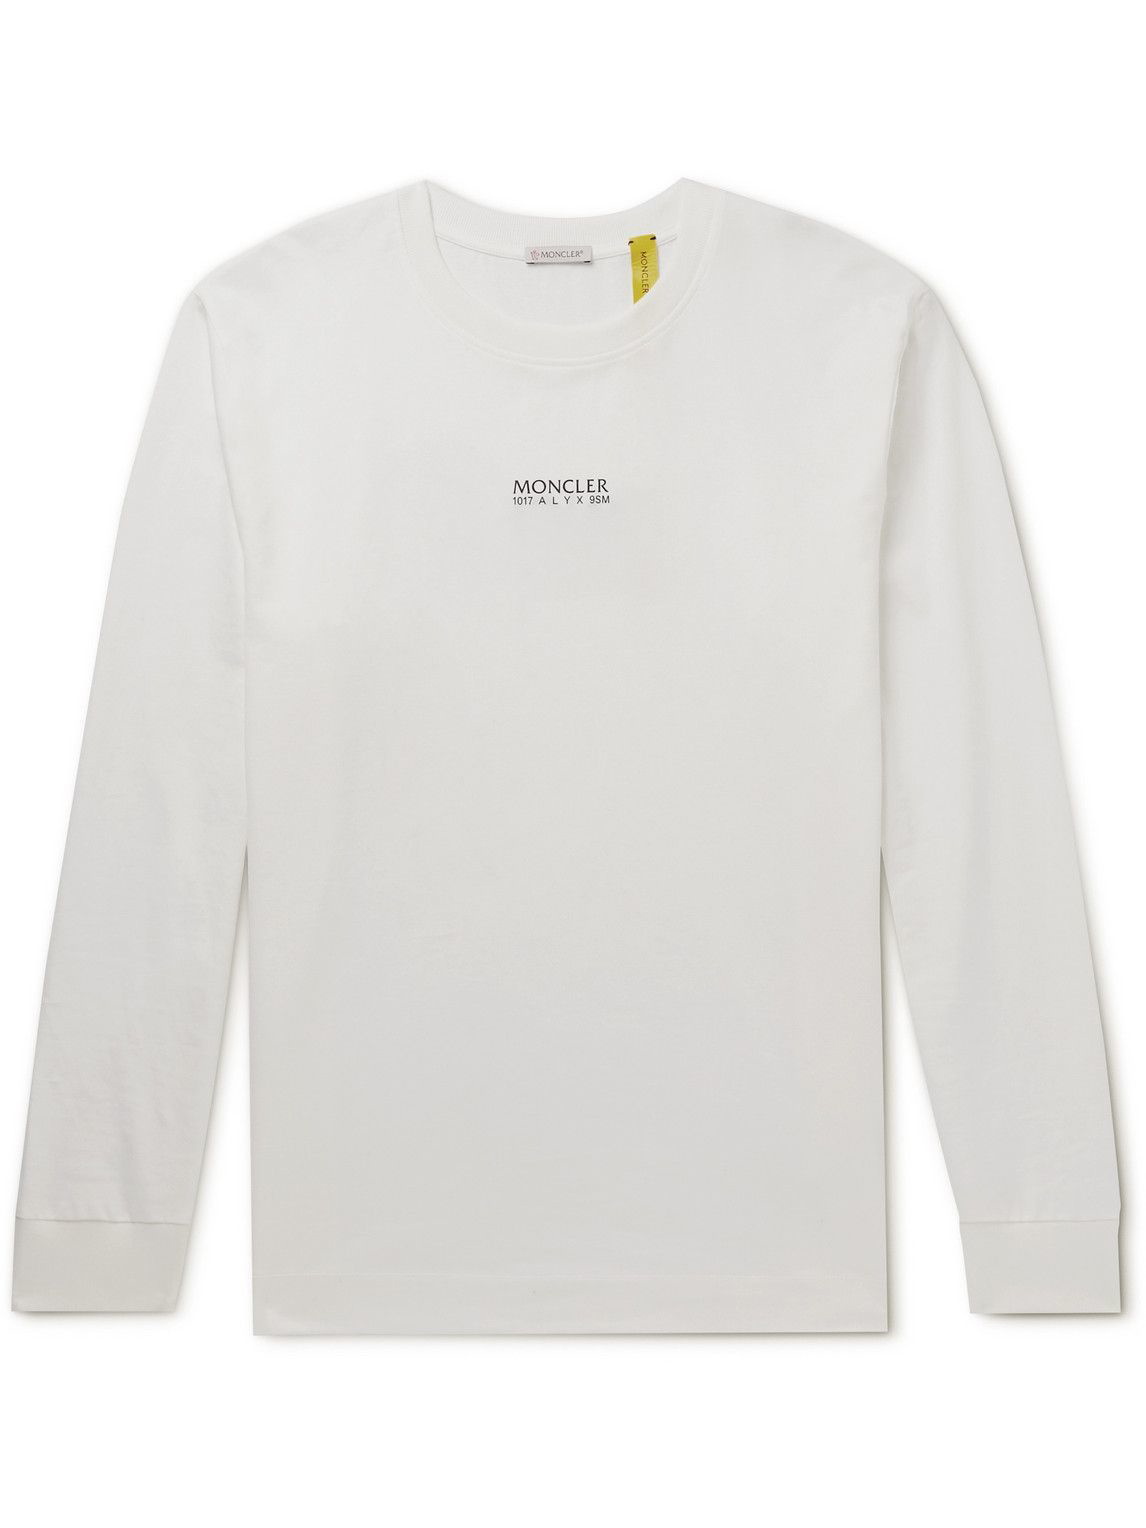 penge tilstrækkelig opbevaring Moncler Genius - 6 Moncler 1017 ALYX 9SM Embellished Cotton-Jersey T-Shirt  - White Moncler Genius